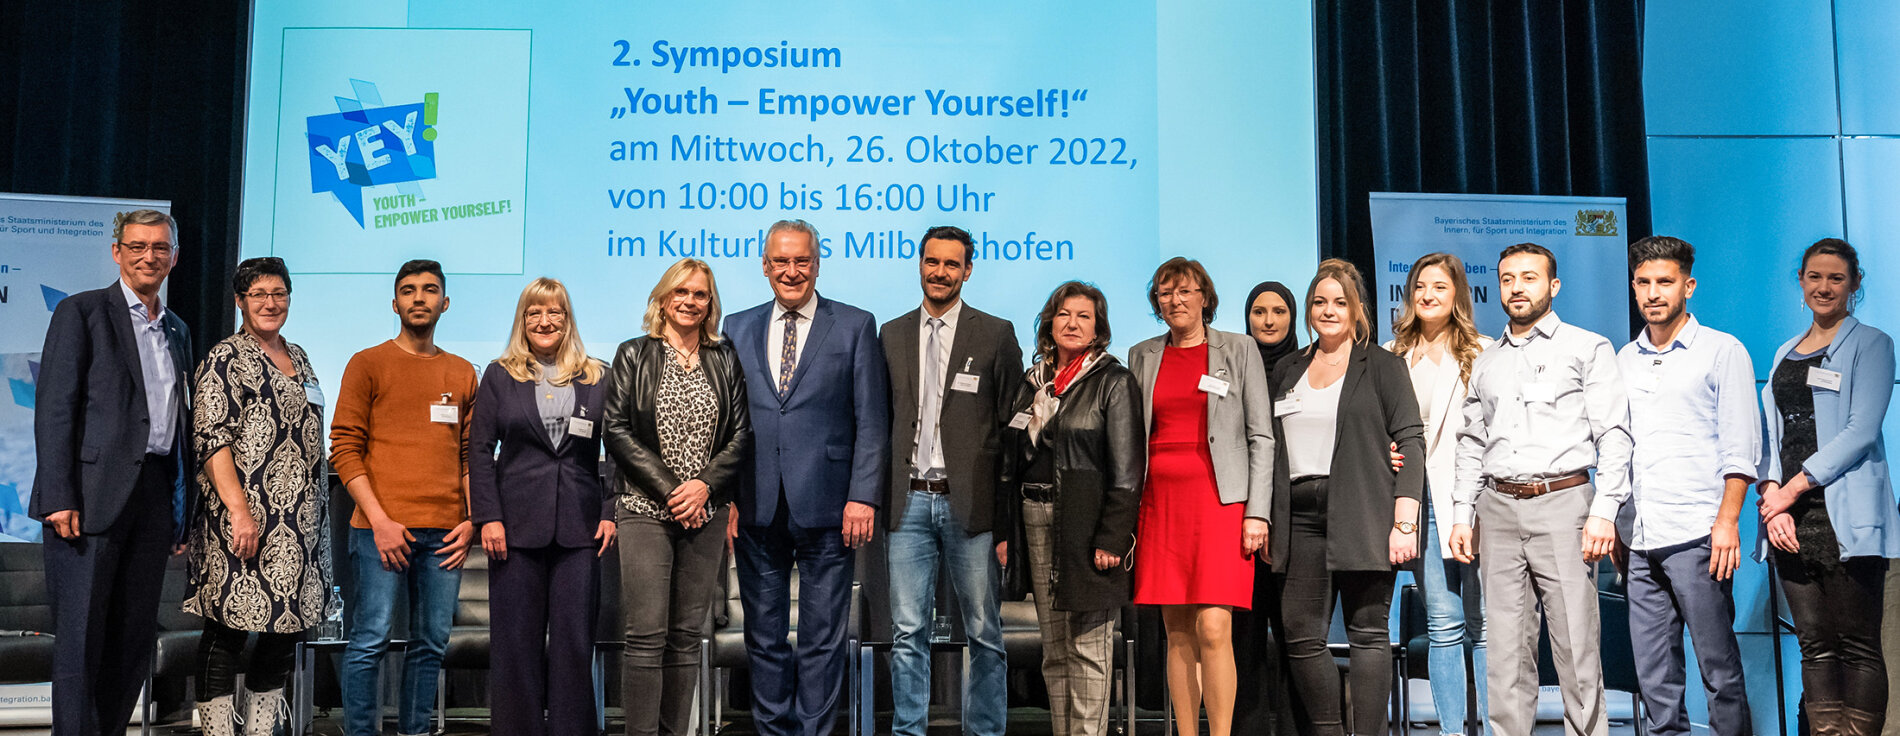 Gruppenfoto mit allen Teilnehmerinnen und Teilnehmern sowie Herrmann